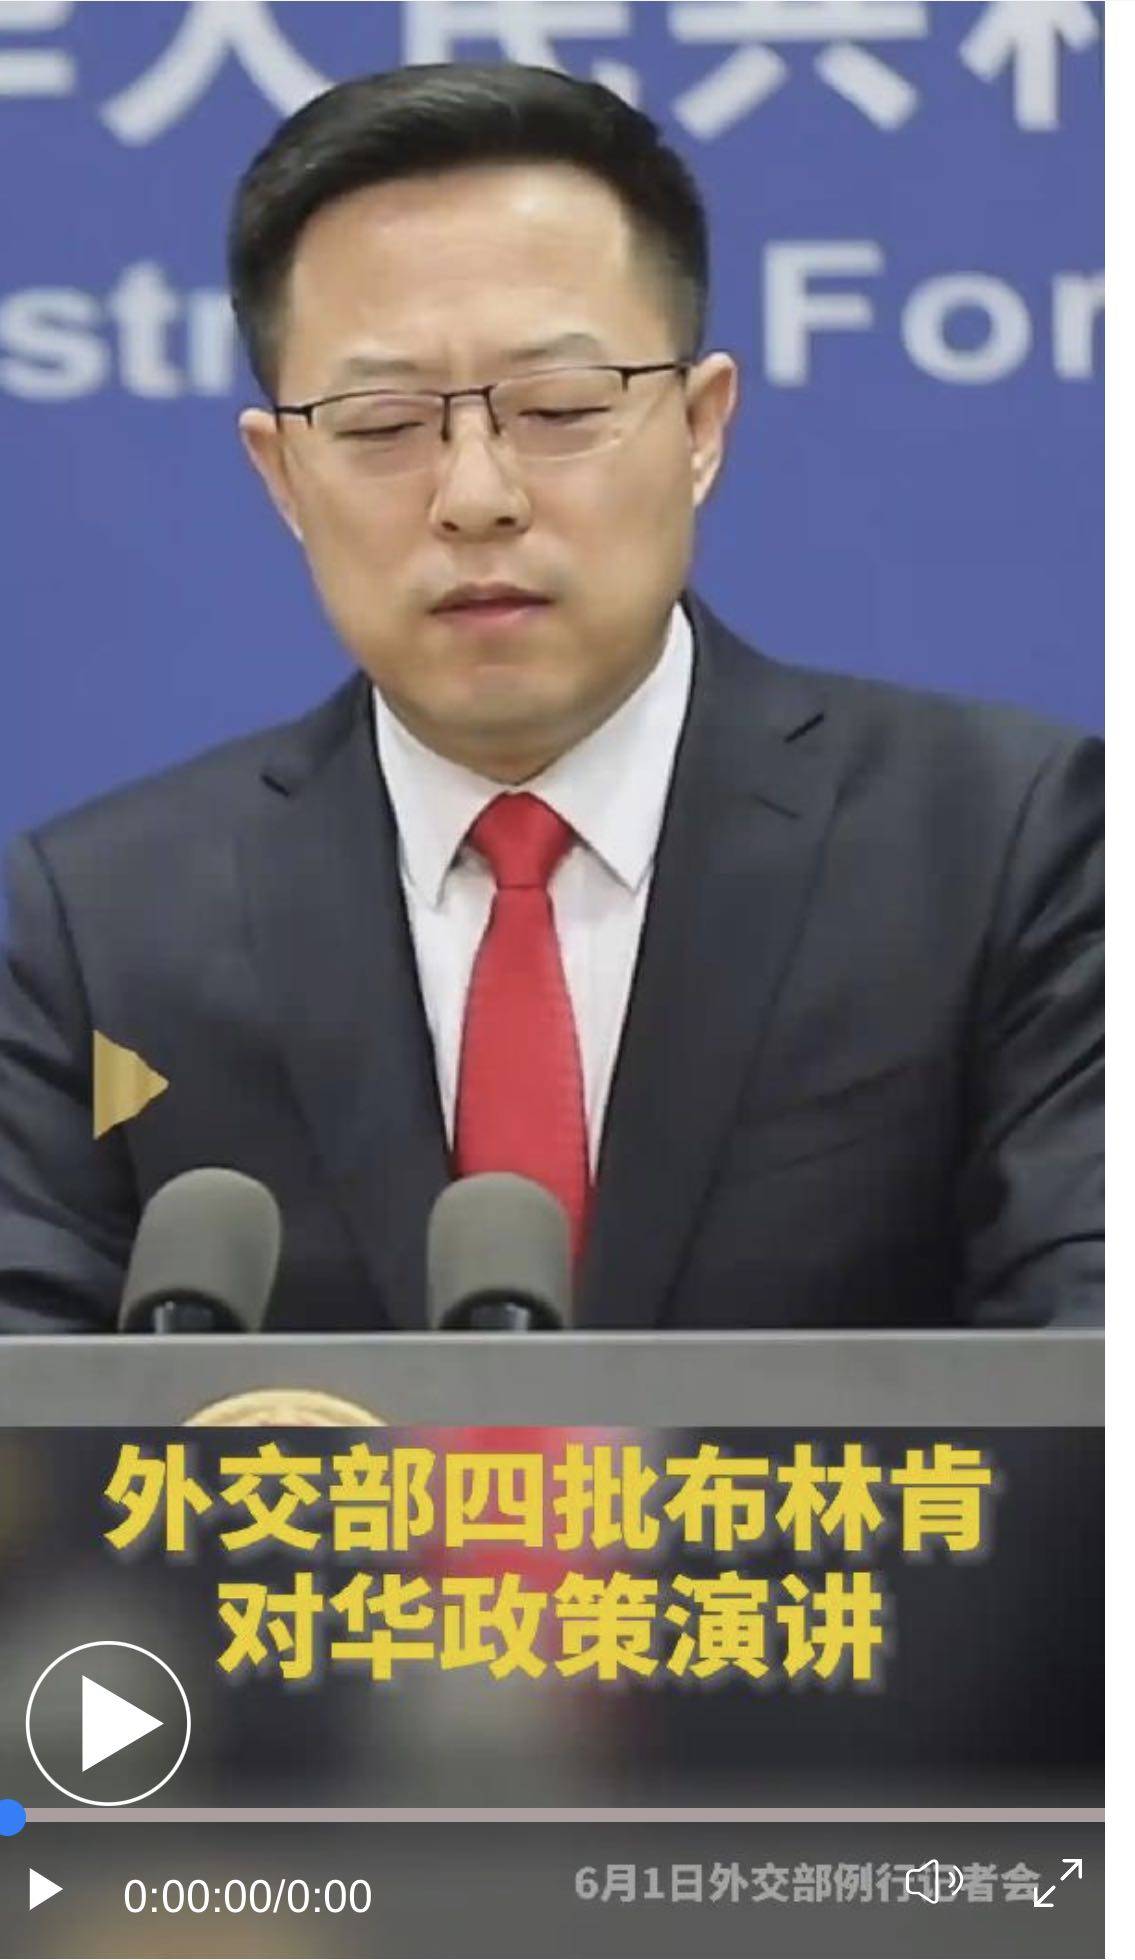 王毅谈与布林肯会晤：在台湾问题上非常明确地向美方发出警告 - 2022年7月15日, 俄罗斯卫星通讯社